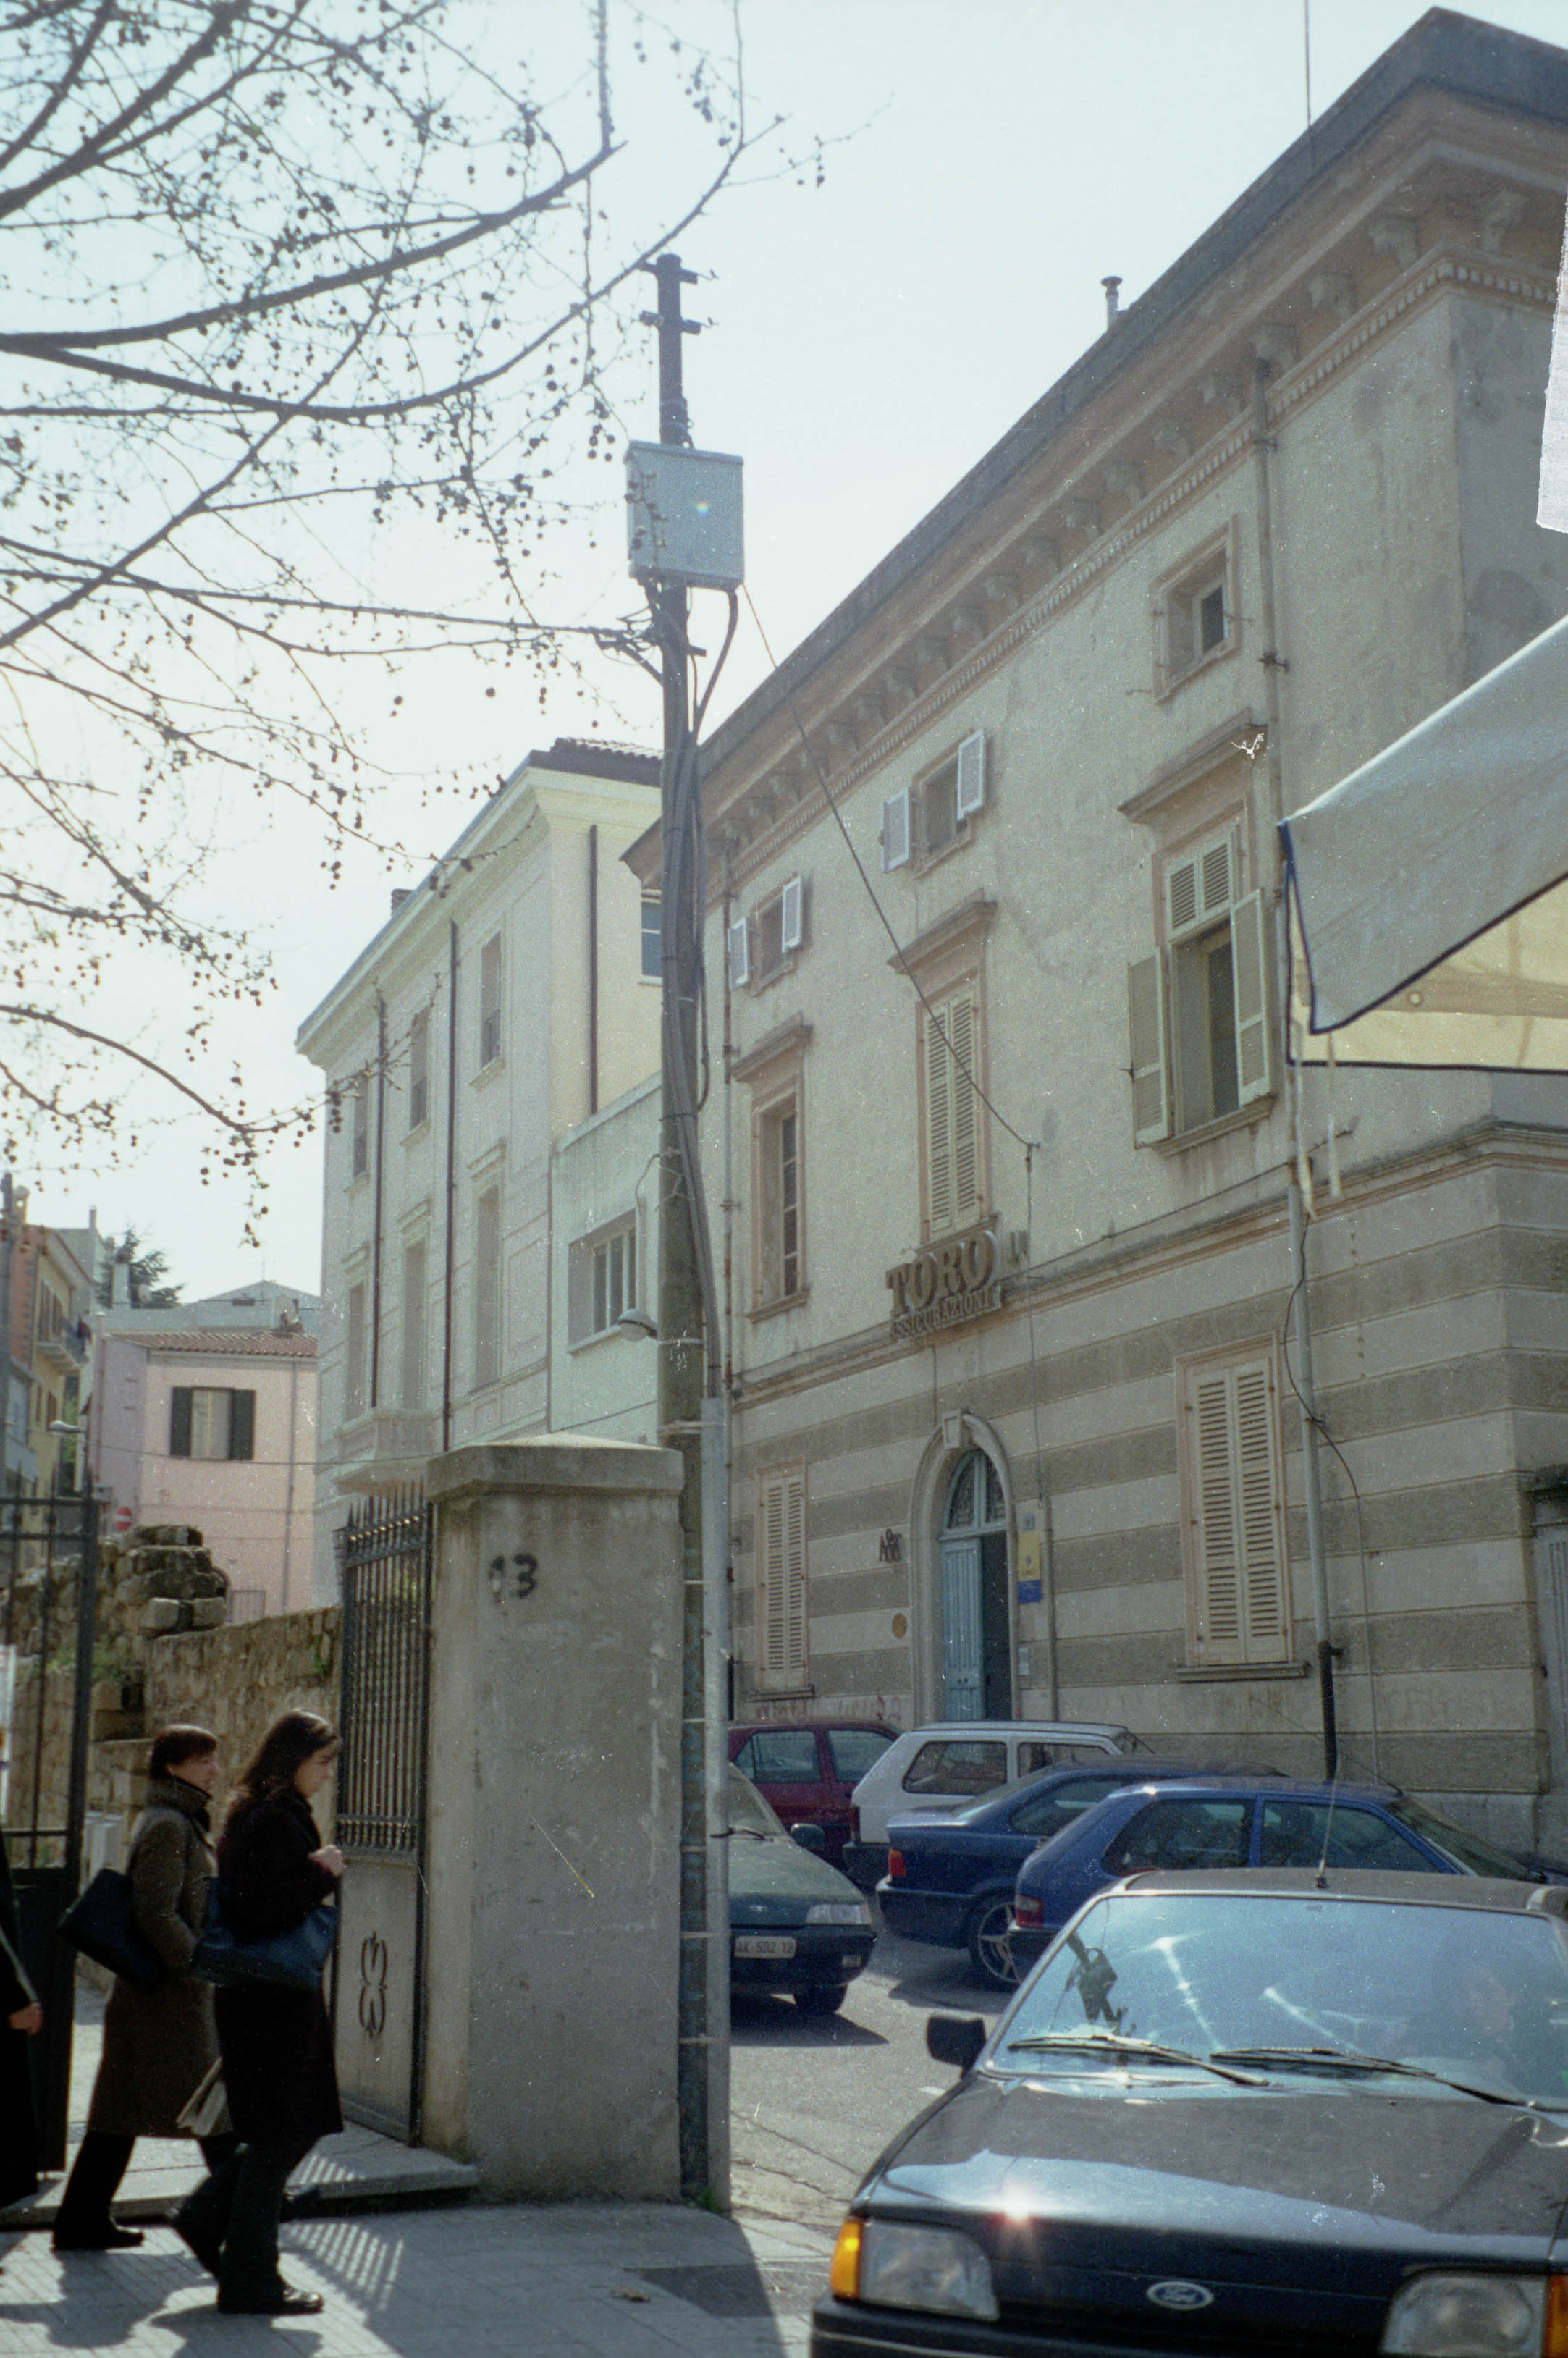 Palazzo casa editrice ilisso (palazzo privato)